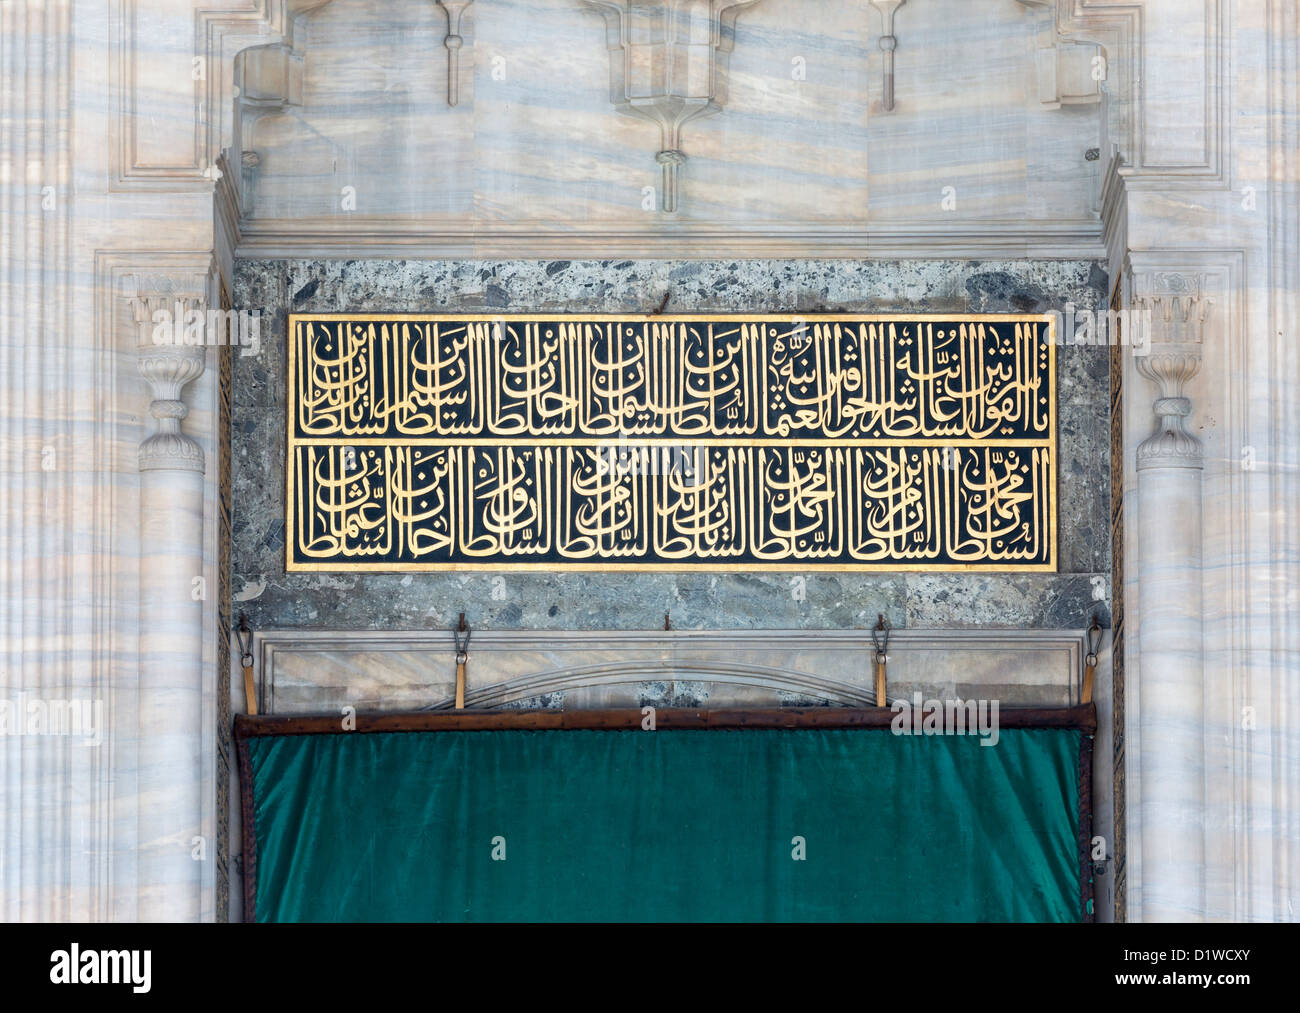 La mezquita de Suleymaniye, Estambul, Turquía, el detalle de la fundación inscripción con la genealogía del sultán reinante Foto de stock